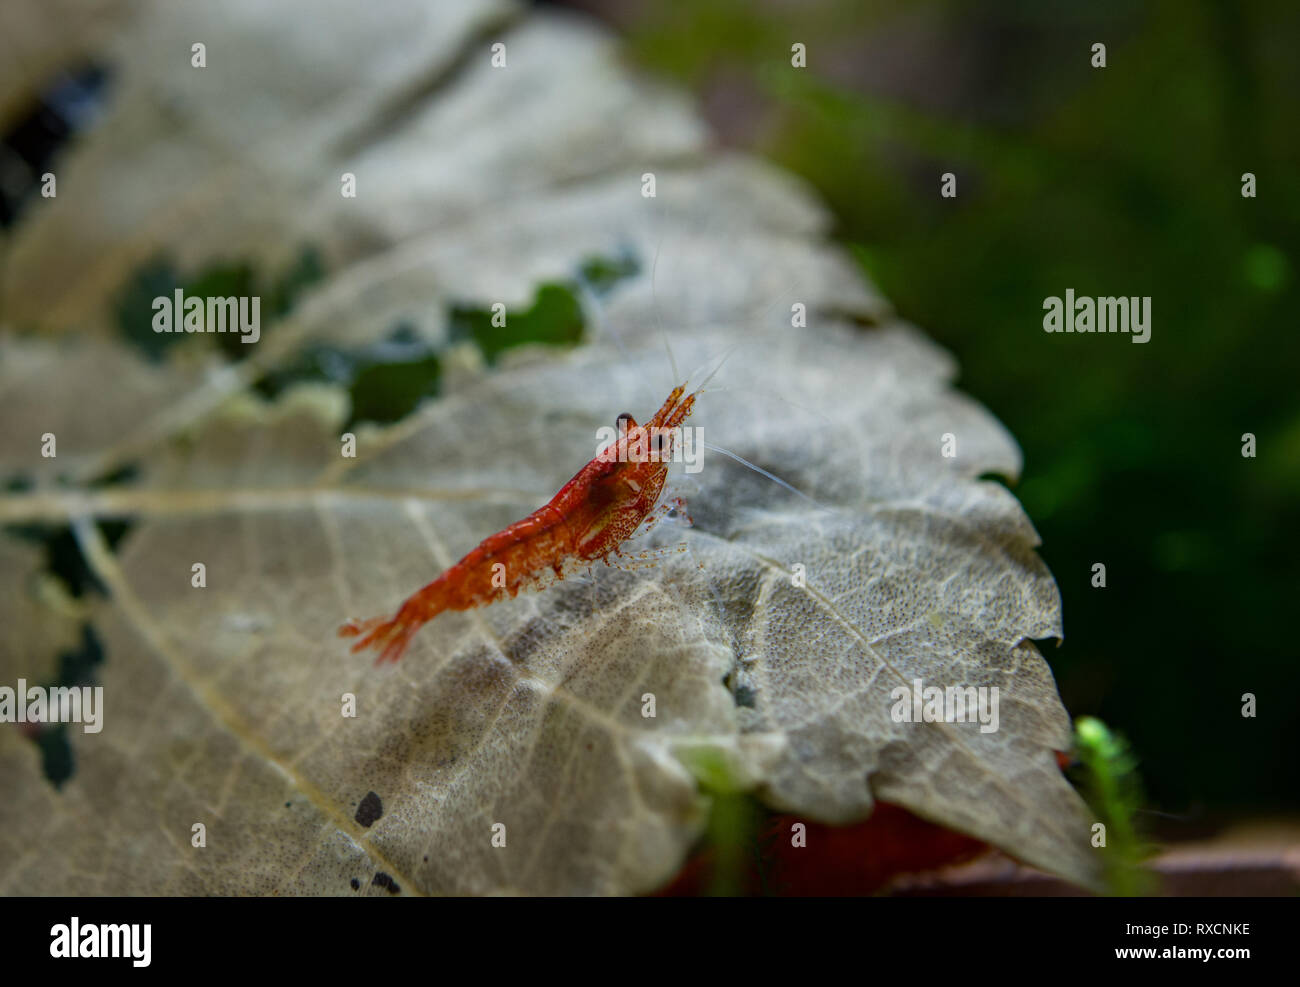 Neocaridina Shrimp in aquarium Stock Photo